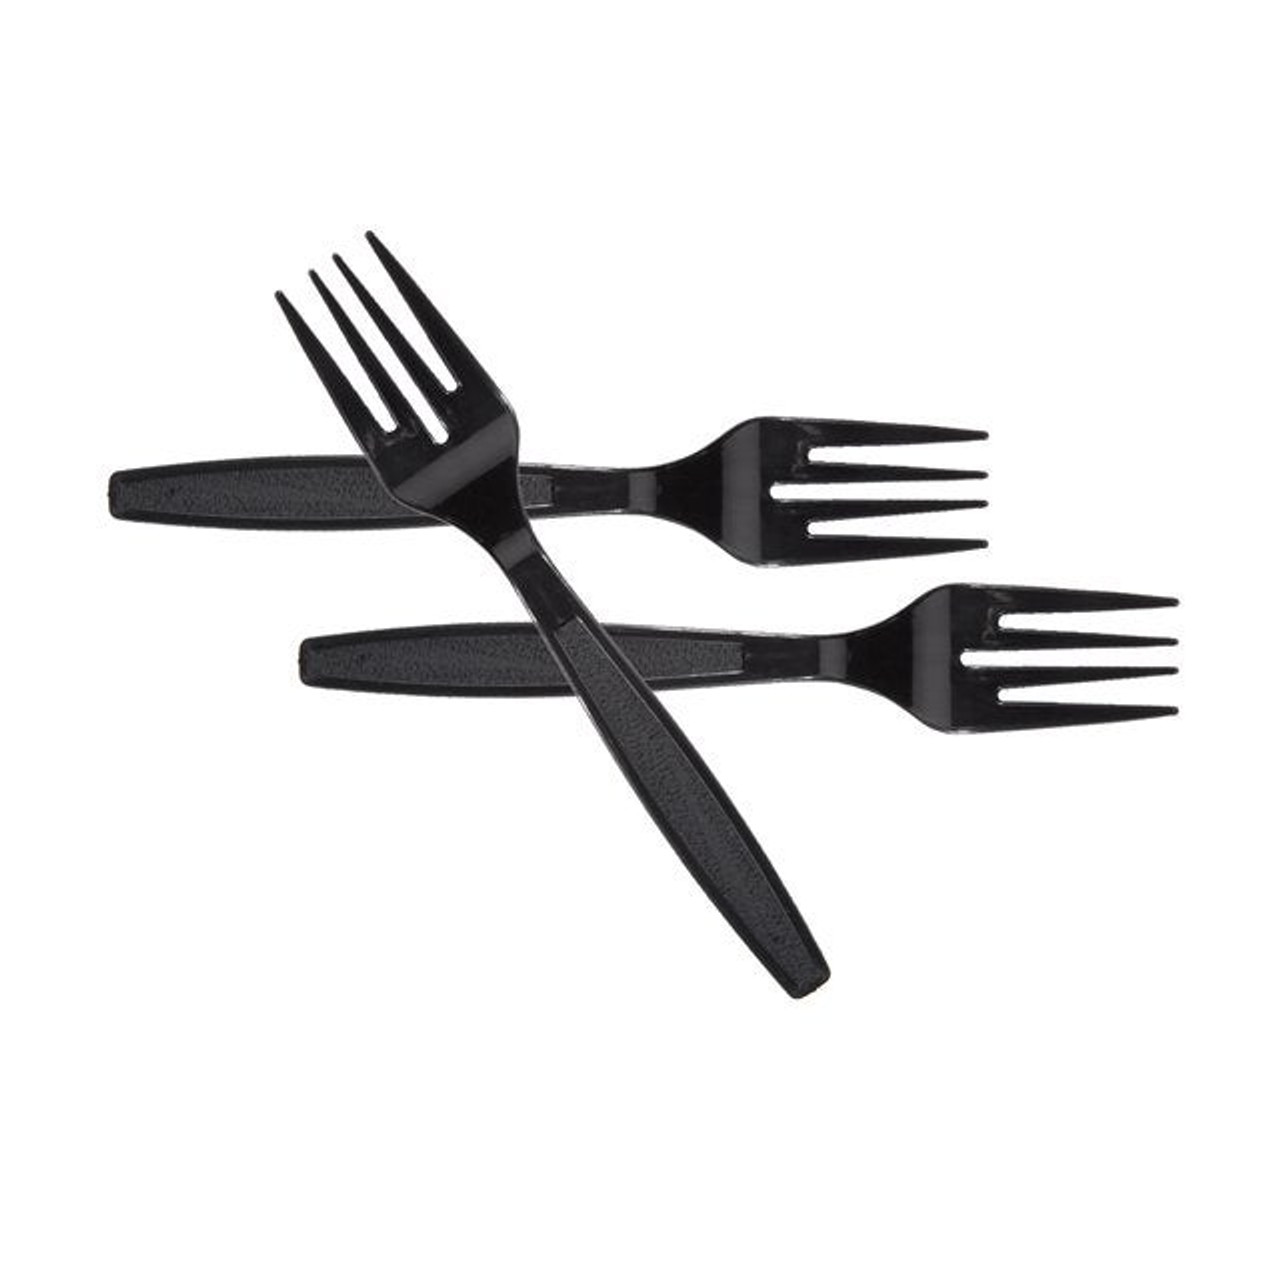 Gordon Choice Black Polystyrene Plastic Forks, Heavyweight, Cutlery | 1000UN/Unit, 1 Unit/Case